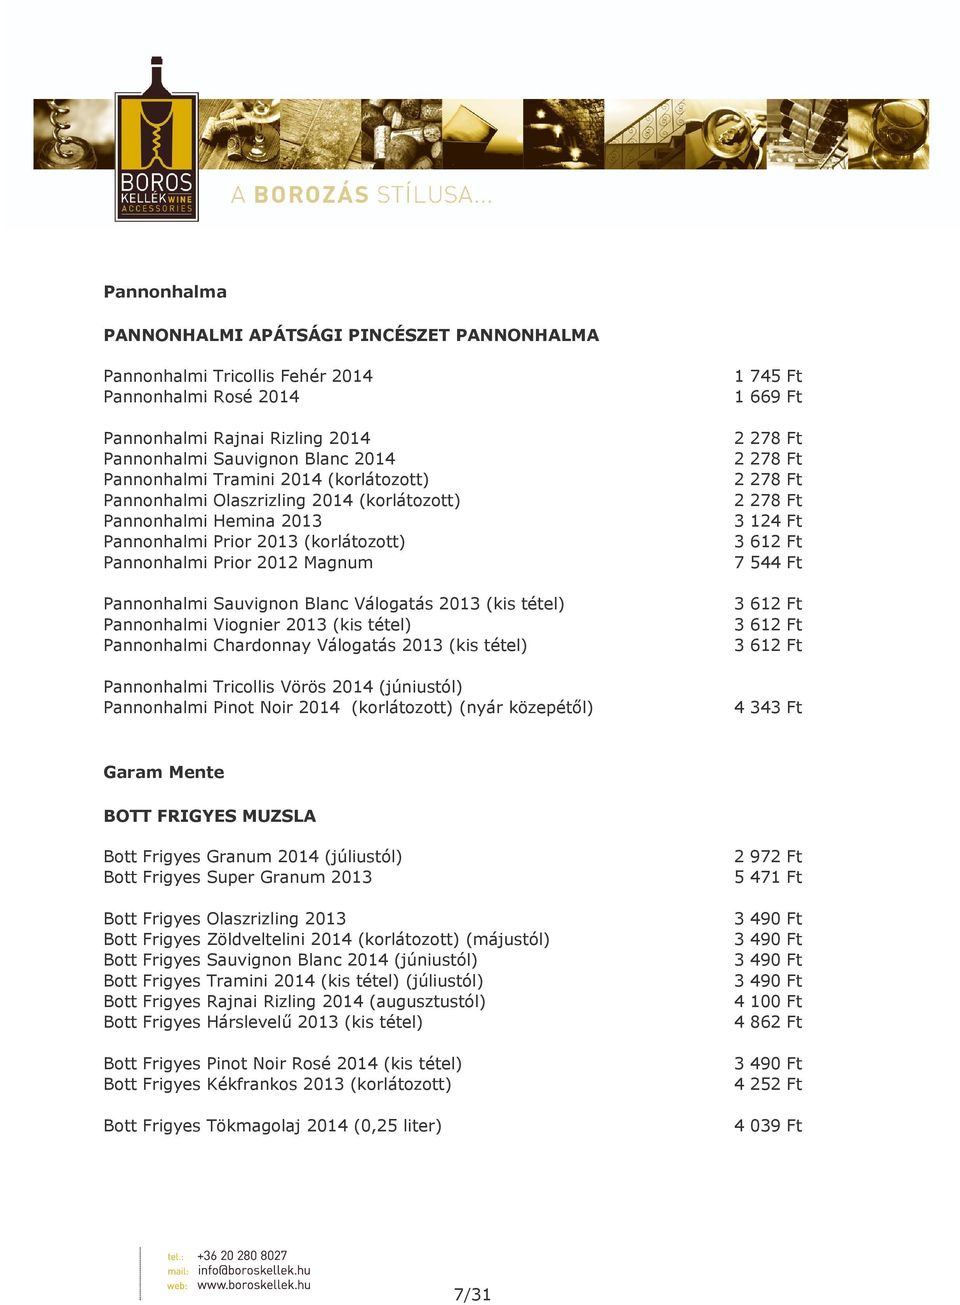 tétel) Pannonhalmi Viognier 2013 (kis tétel) Pannonhalmi Chardonnay Válogatás 2013 (kis tétel) Pannonhalmi Tricollis Vörös 2014 (júniustól) Pannonhalmi Pinot Noir 2014 (korlátozott) (nyár közepétől)